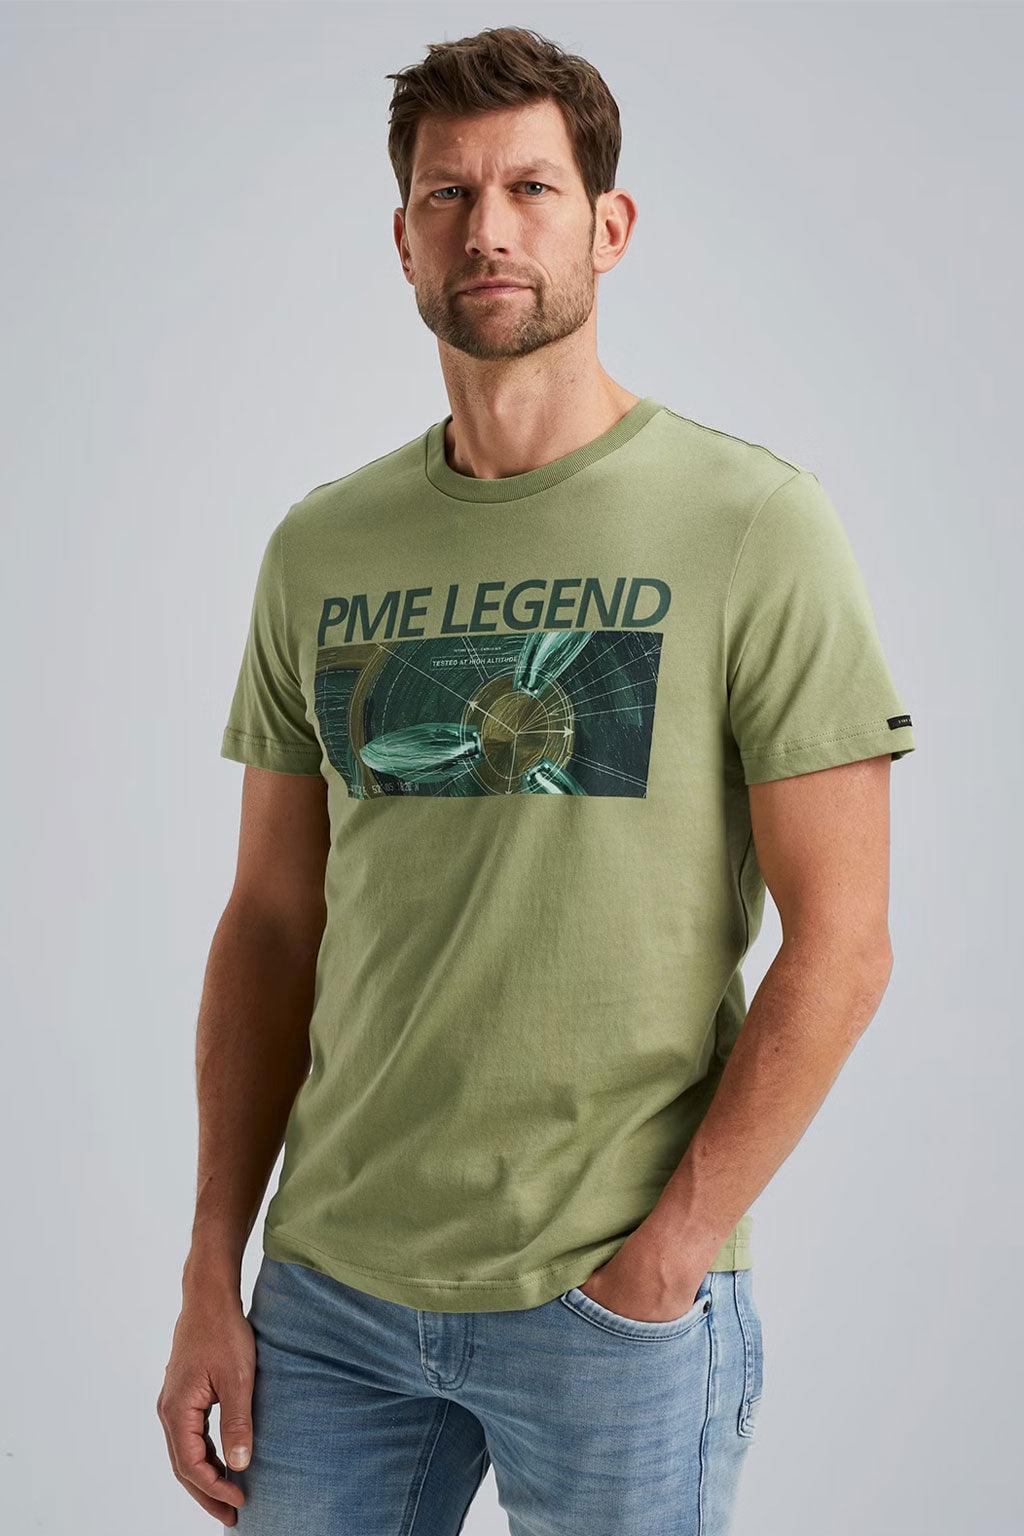 PME Legend t-shirt